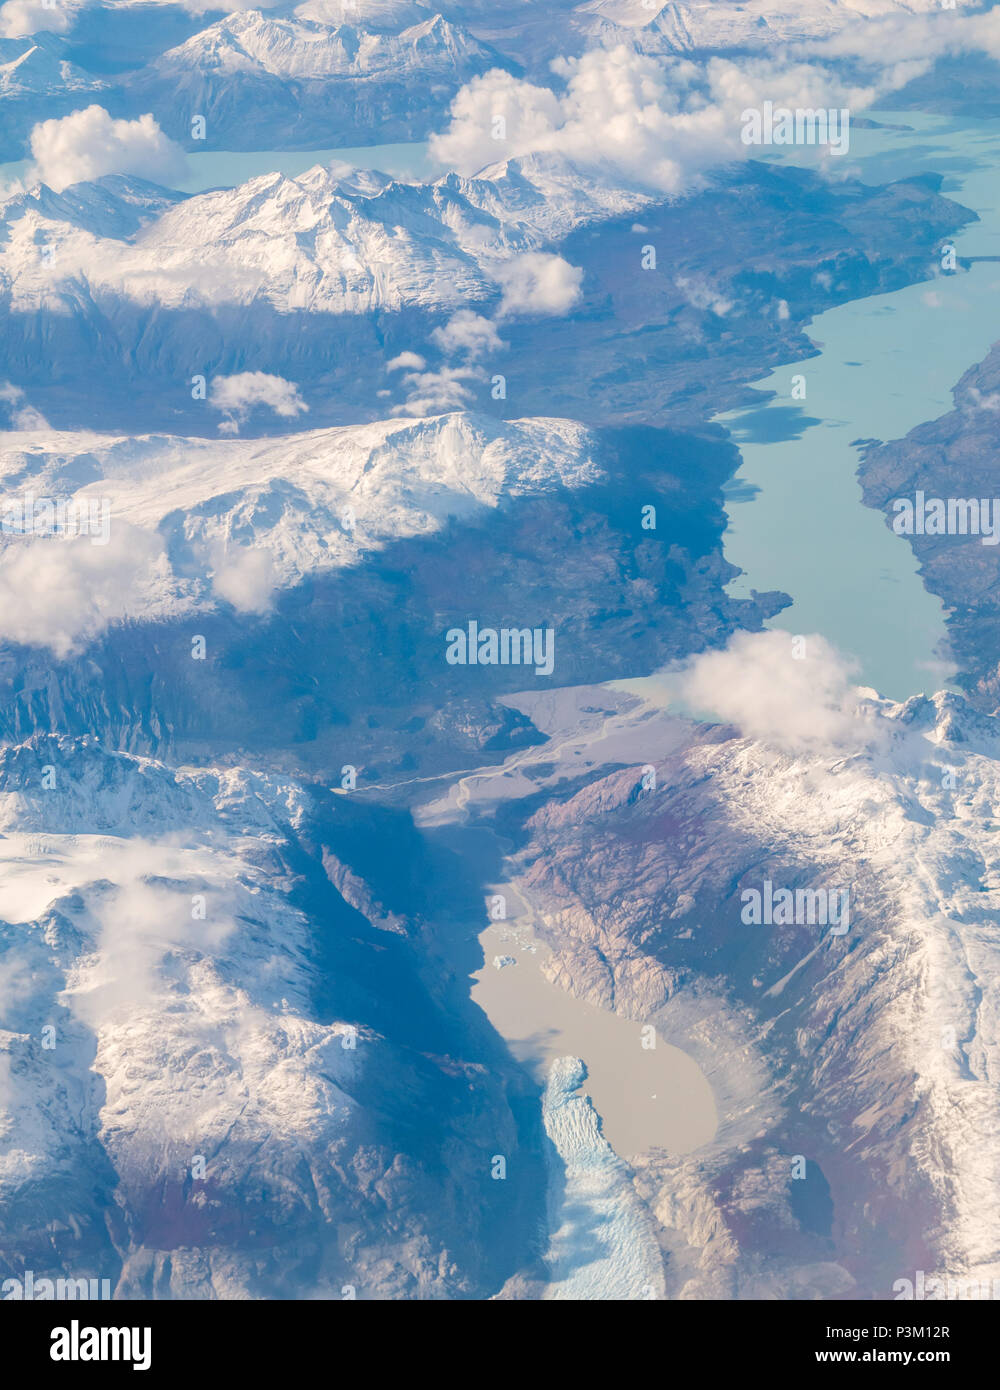 Vue depuis la fenêtre de l'avion de la neige a couvert des Andes avec des lacs et des glaciers et icebergs, le sud du champ de glace de Patagonie Patagonie, au Chili Banque D'Images